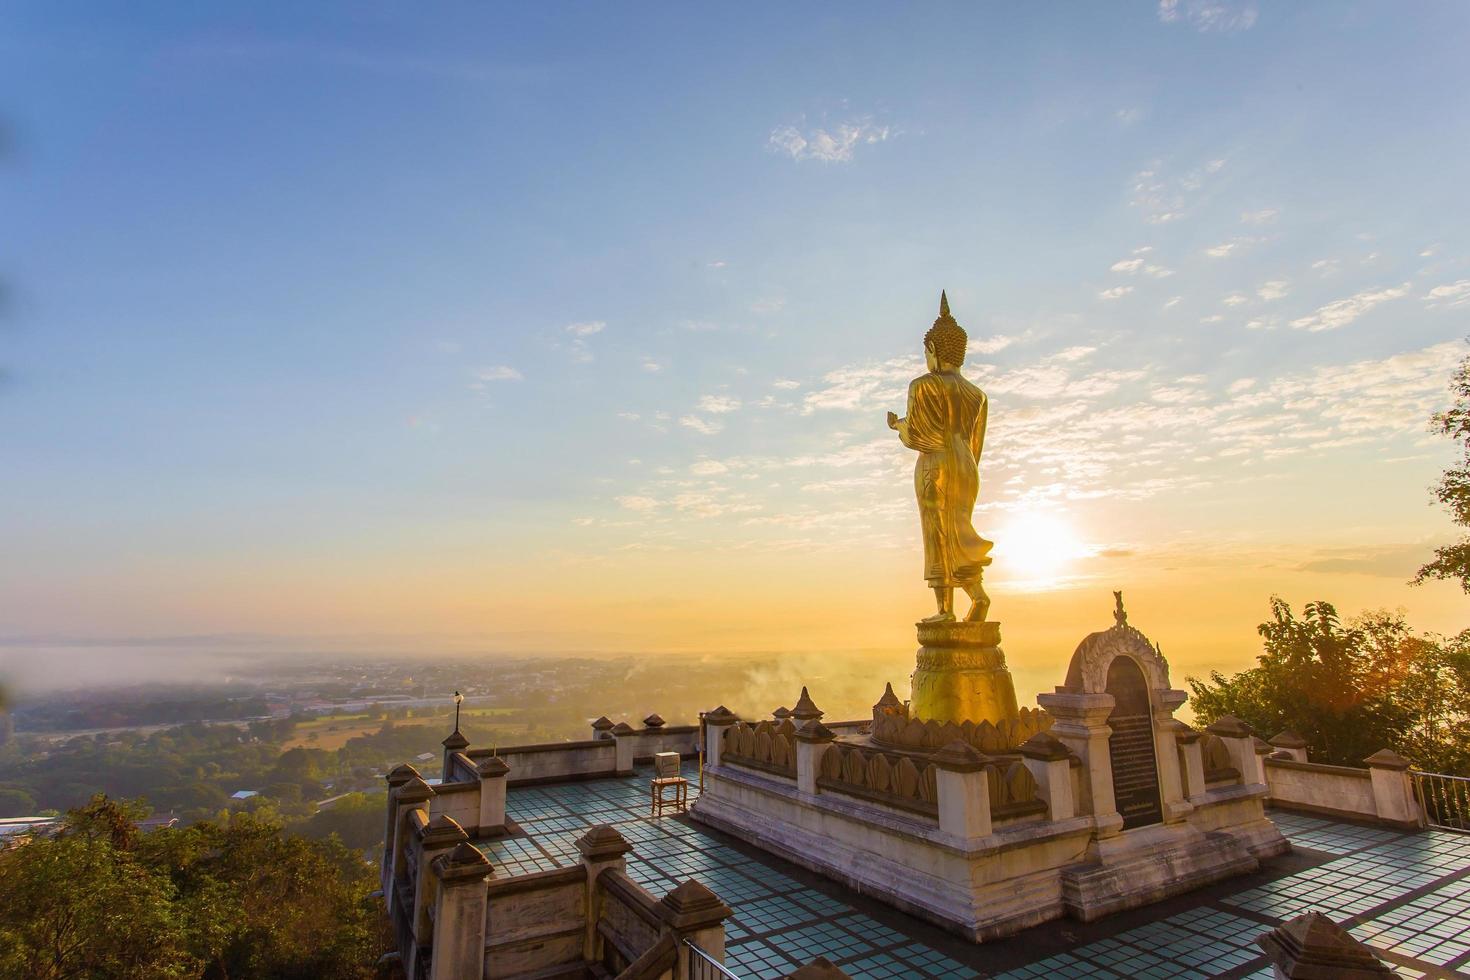 statue de bouddha doré à l'intérieur de phra ce temple khao noi le temple est situé sur la colline le matin avec du soleil et un ciel lumineux, c'est une attraction touristique majeure de nan, en thaïlande. photo